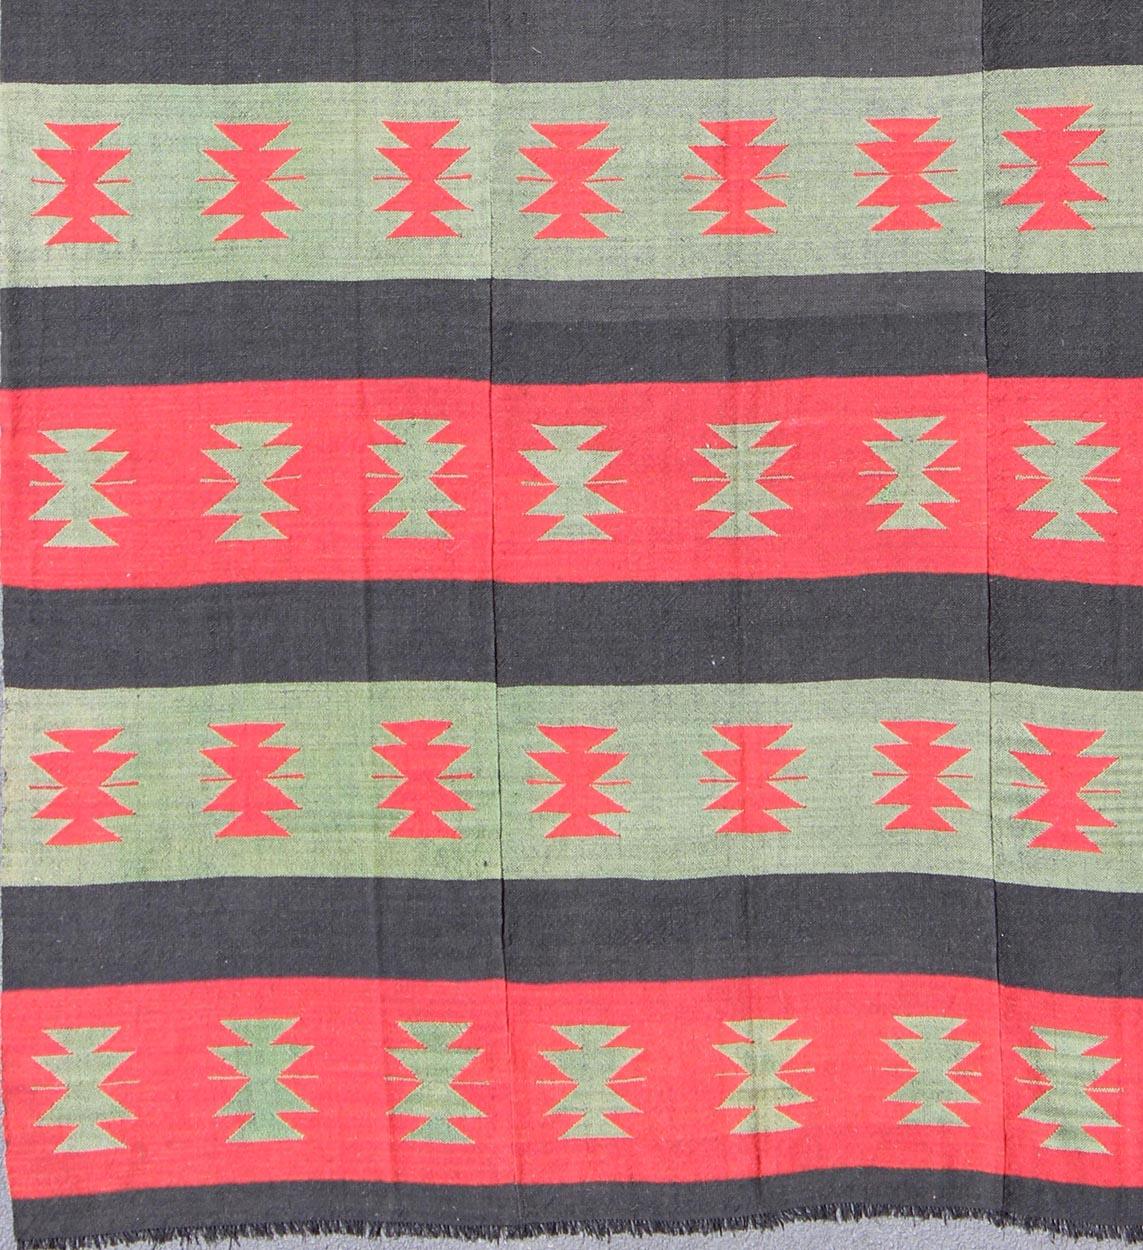 Vieux tapis Kilim turc avec des formes tribales et des rayures horizontales en rouge et vert, tapis emd-3428, pays d'origine / type : Turquie / Kilim, vers le milieu du 20ème siècle.

Ce Kilim unique du milieu du siècle présente des formes